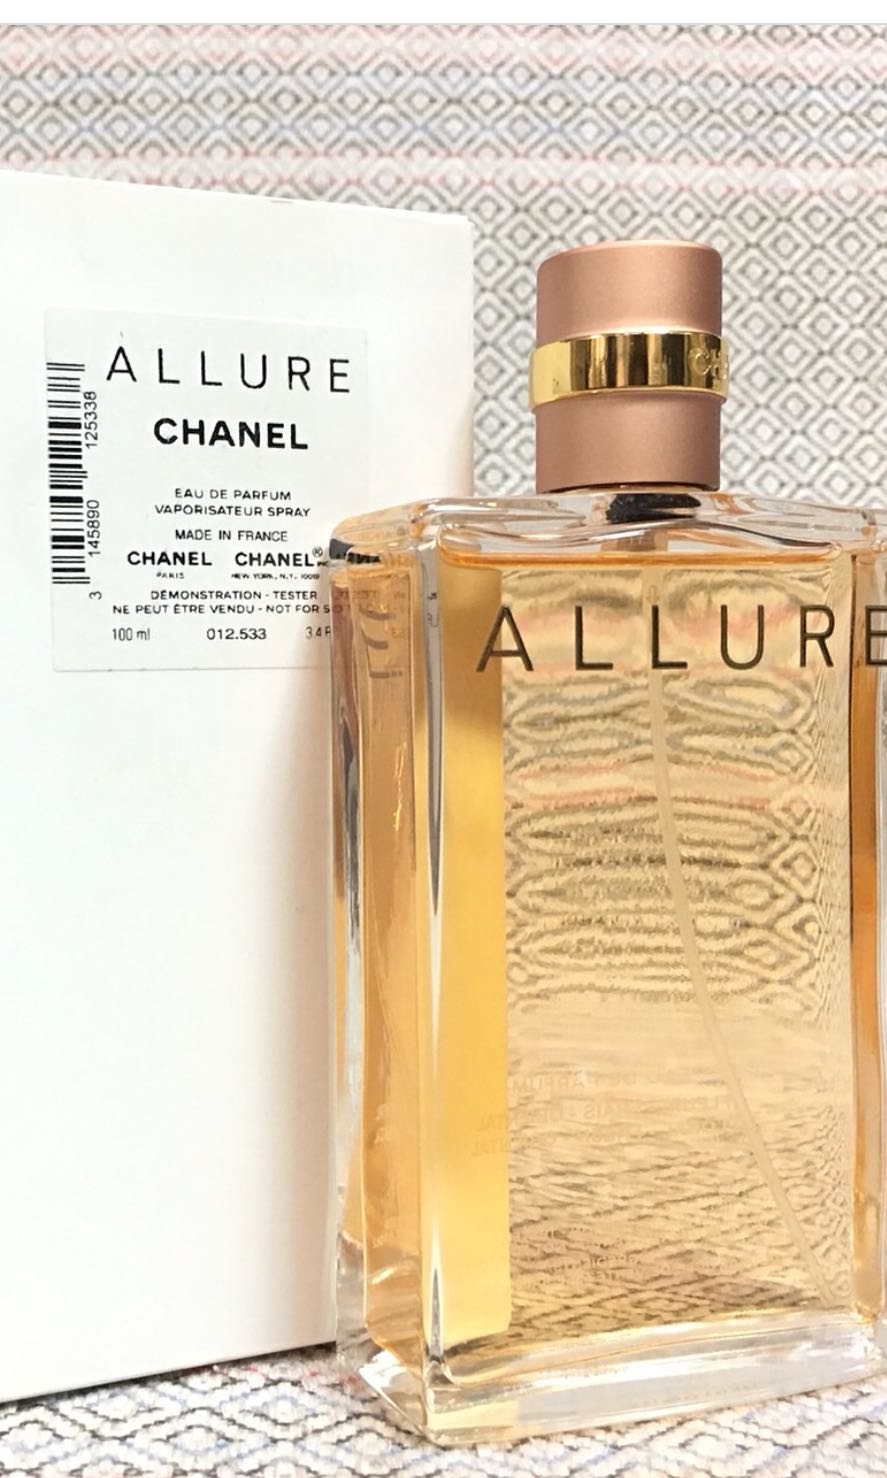 VIP tester Chanel Chance Eau Fraiche, 60 ml original perfume eau de  toilette perfume Dubai UAE tester - AliExpress